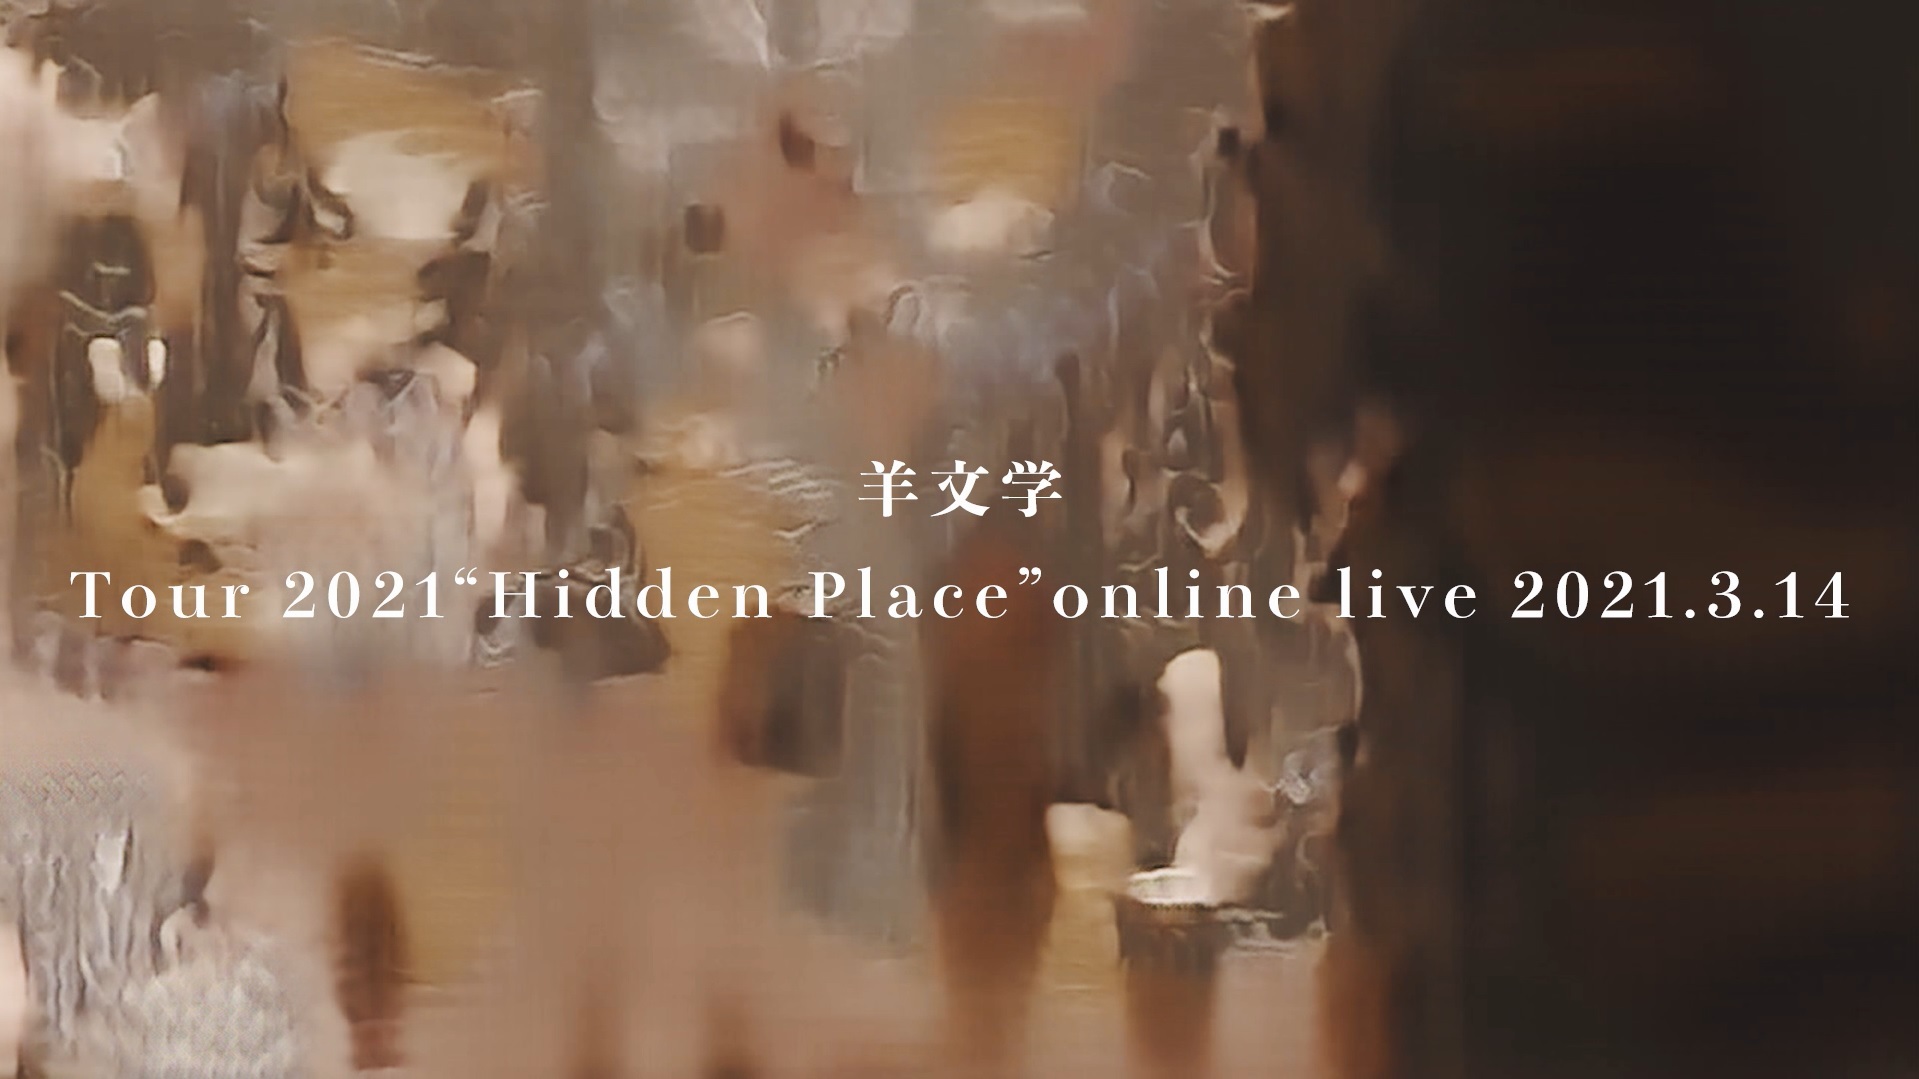 「羊文学 Tour 2021 “Hidden Place” online live 2021.3.14」スクリーンショット